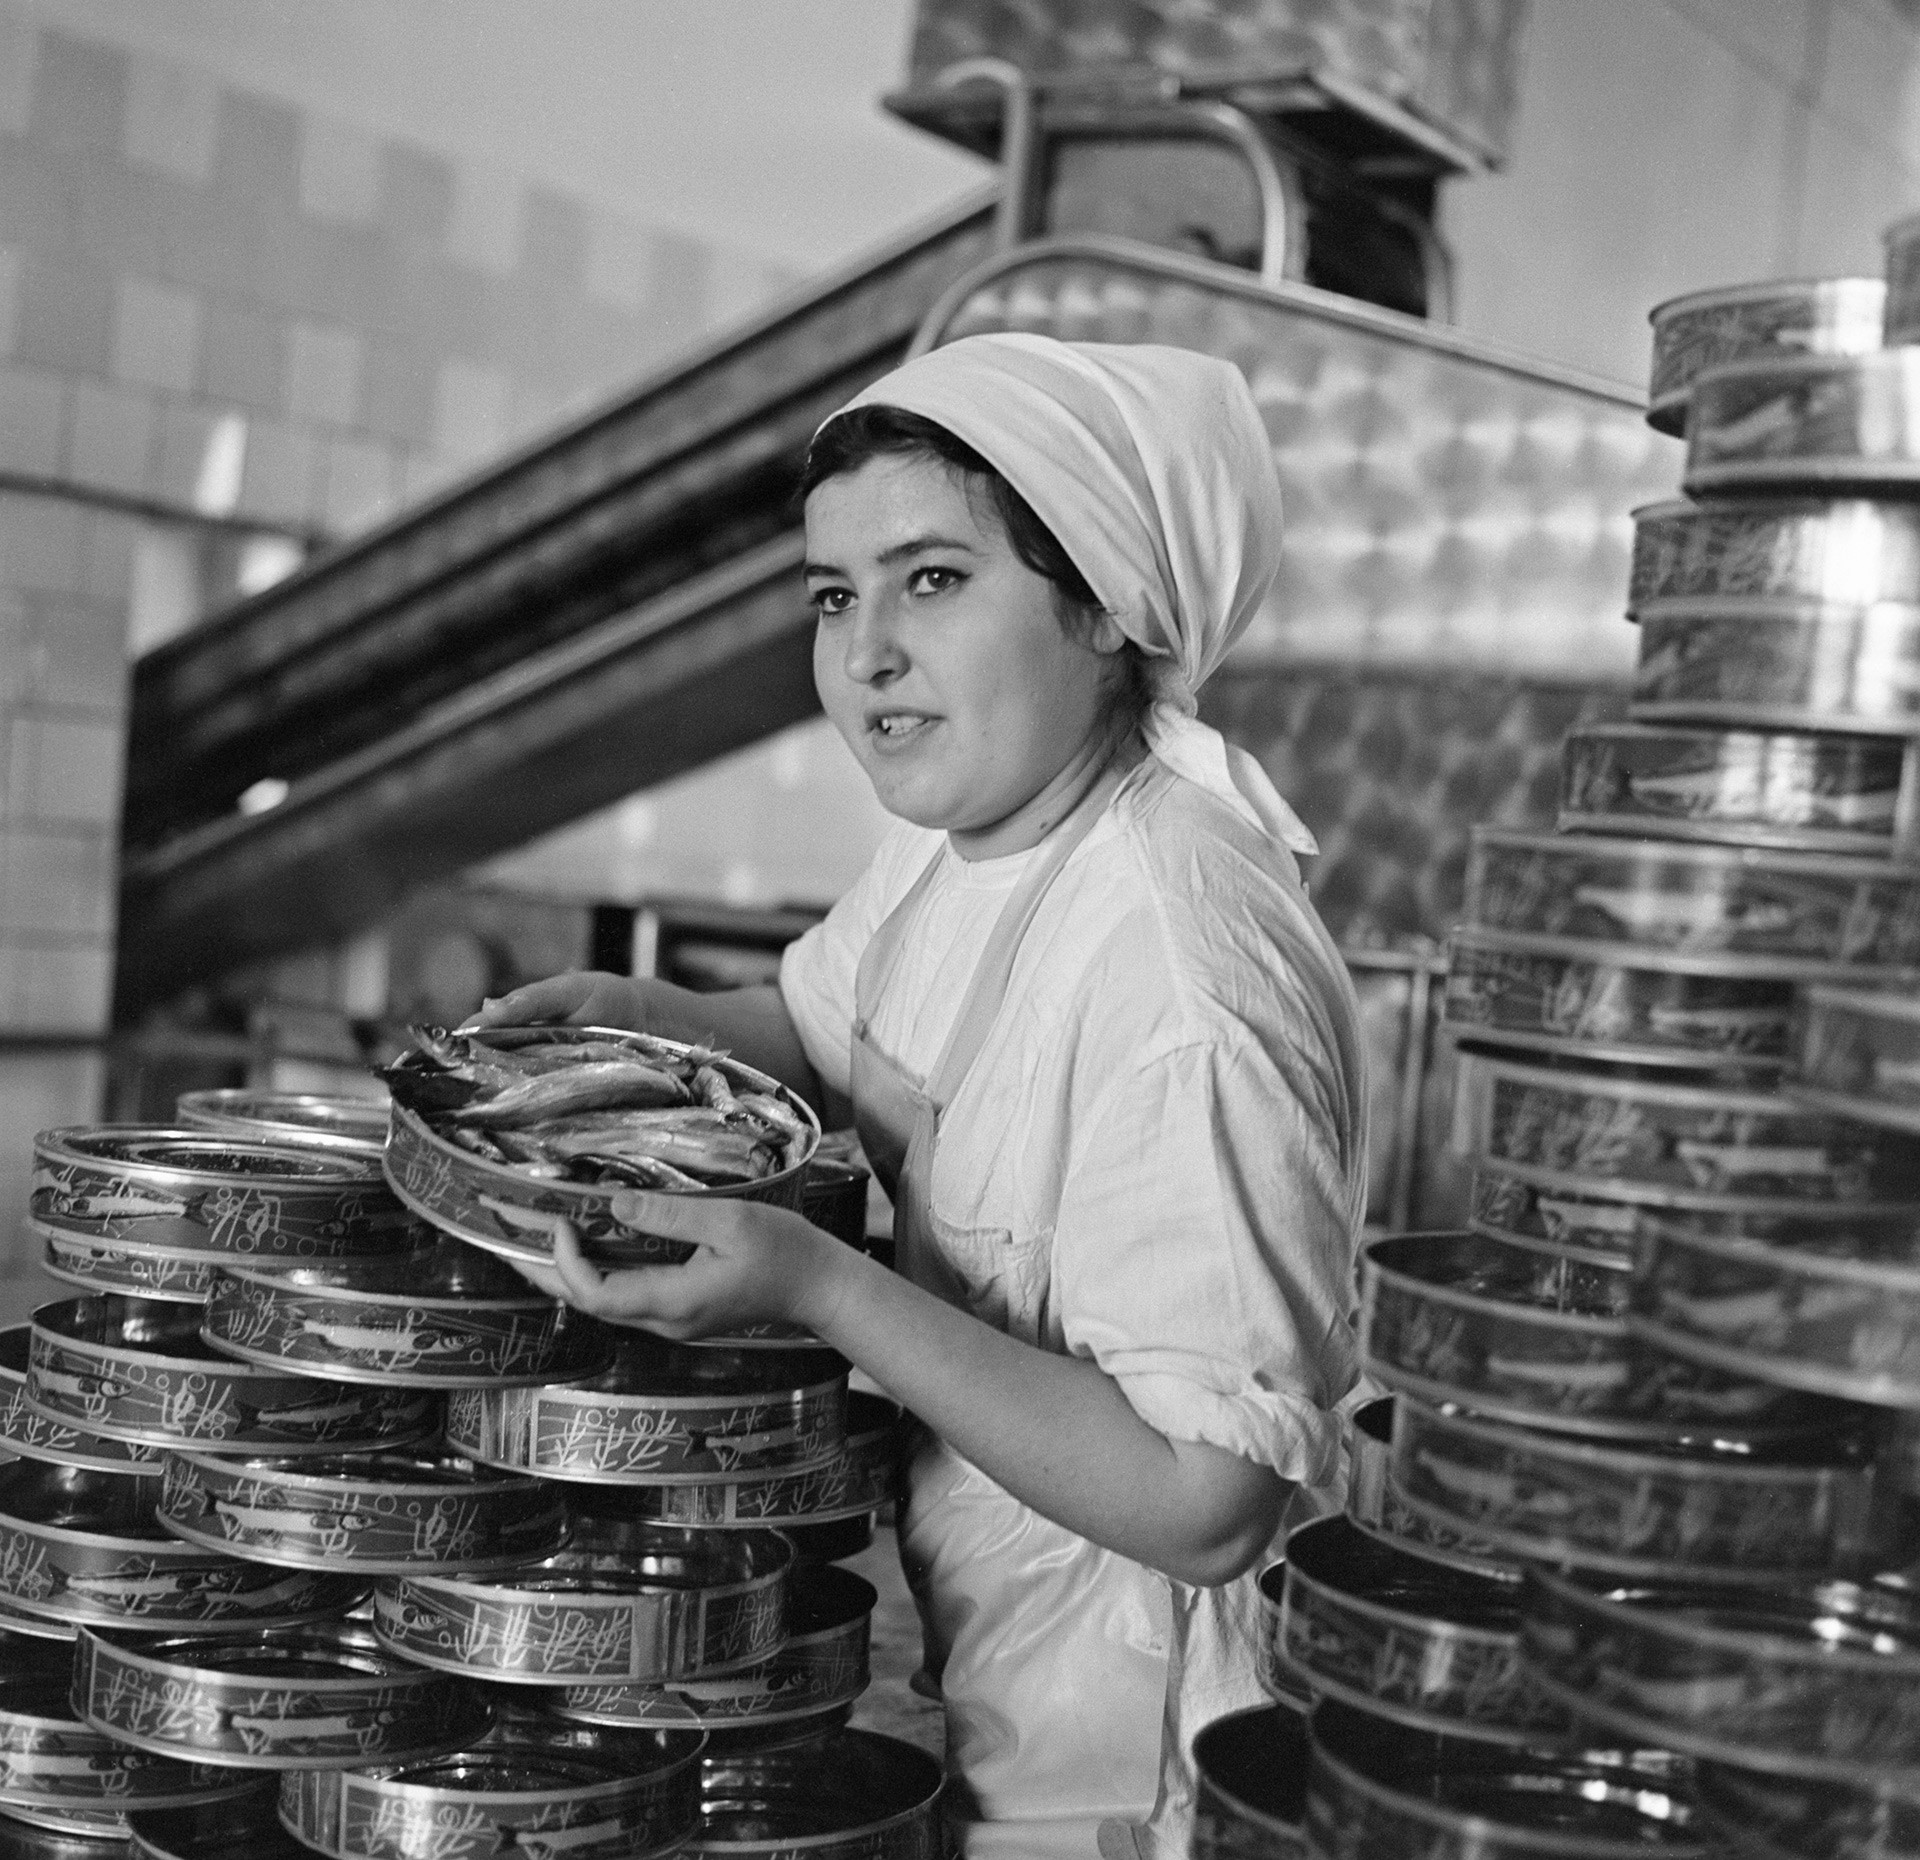 ムルマンスク市の魚加工工場、1971年
